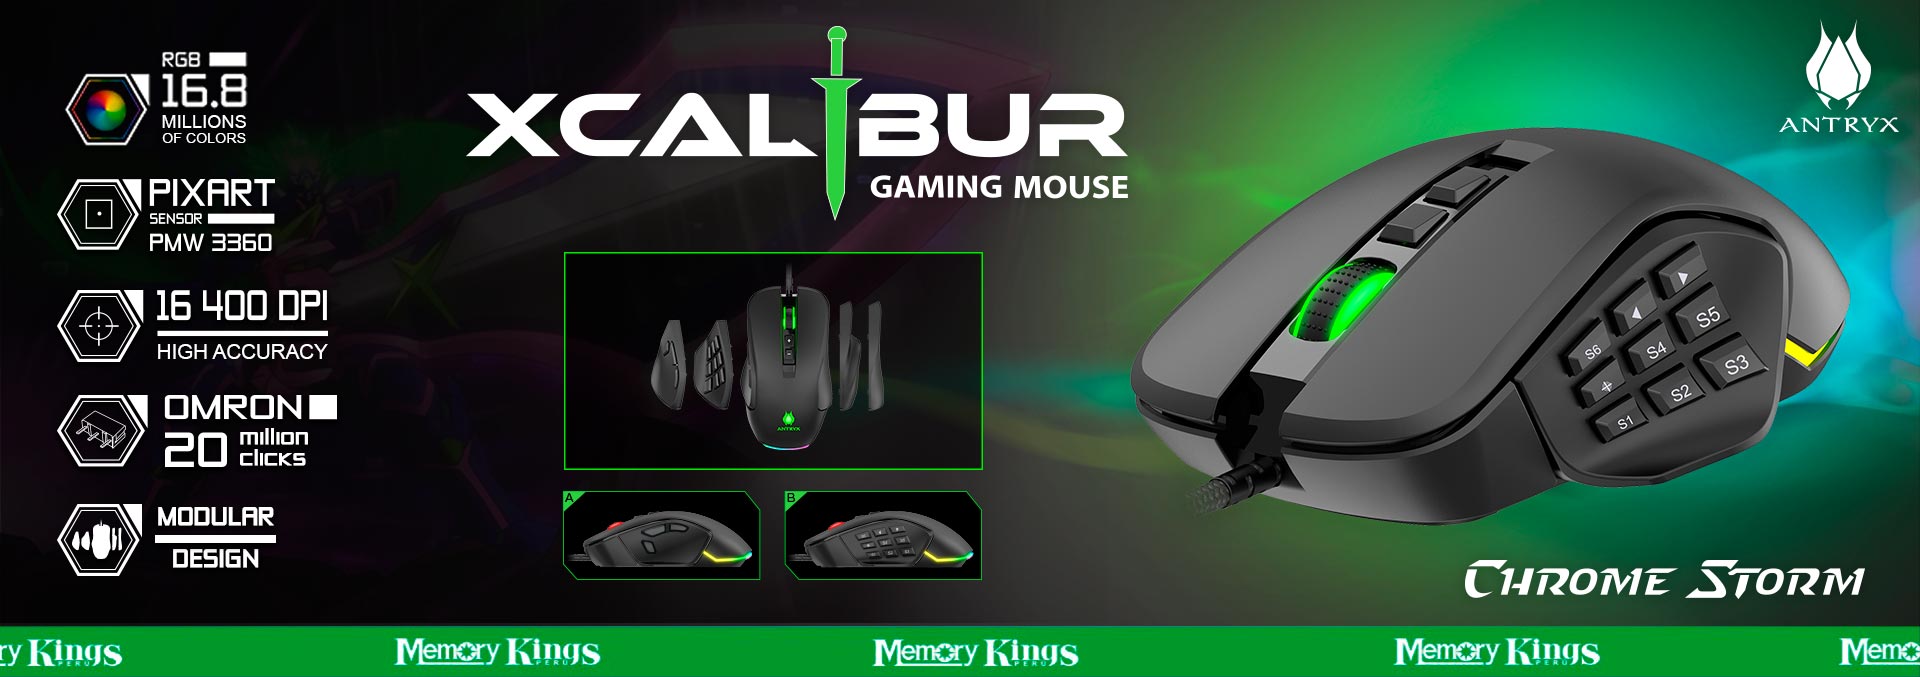 027136 - MOUSE Gaming ANTRYX XCALIBUR RGB 16.4K MMO|MOBA